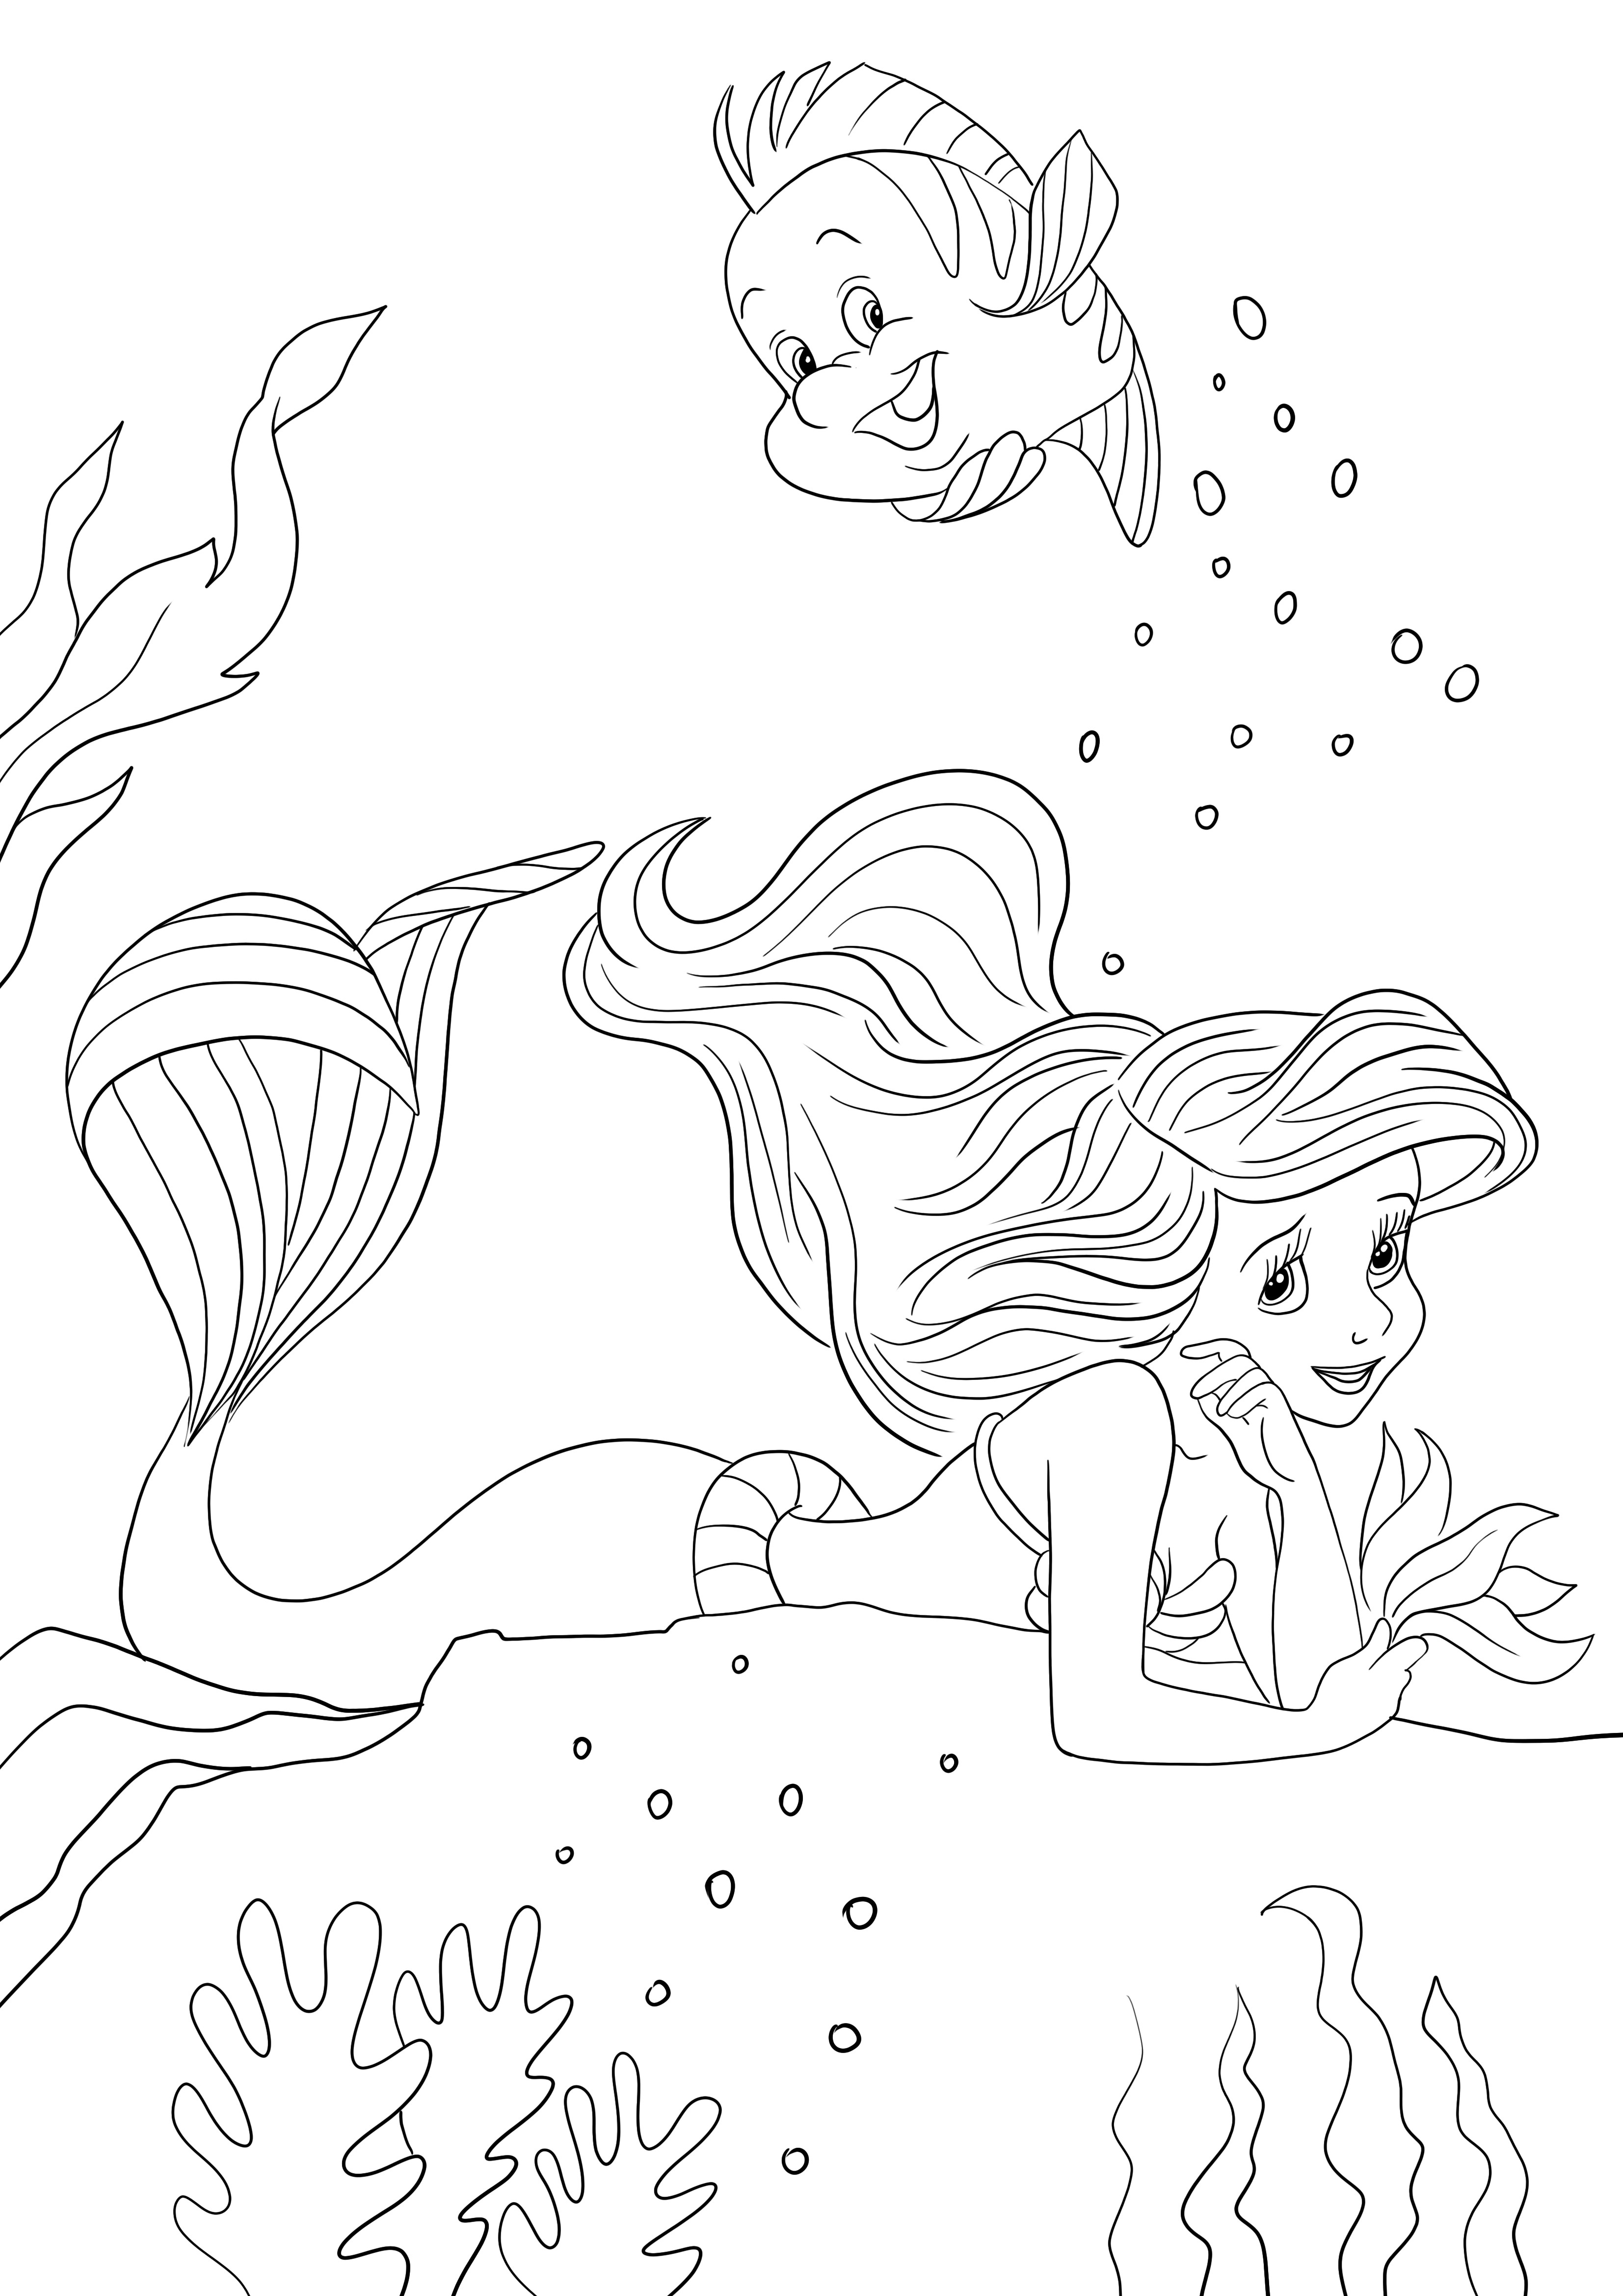 Dibujo de Ariel soñando para colorear para niños para imprimir gratis